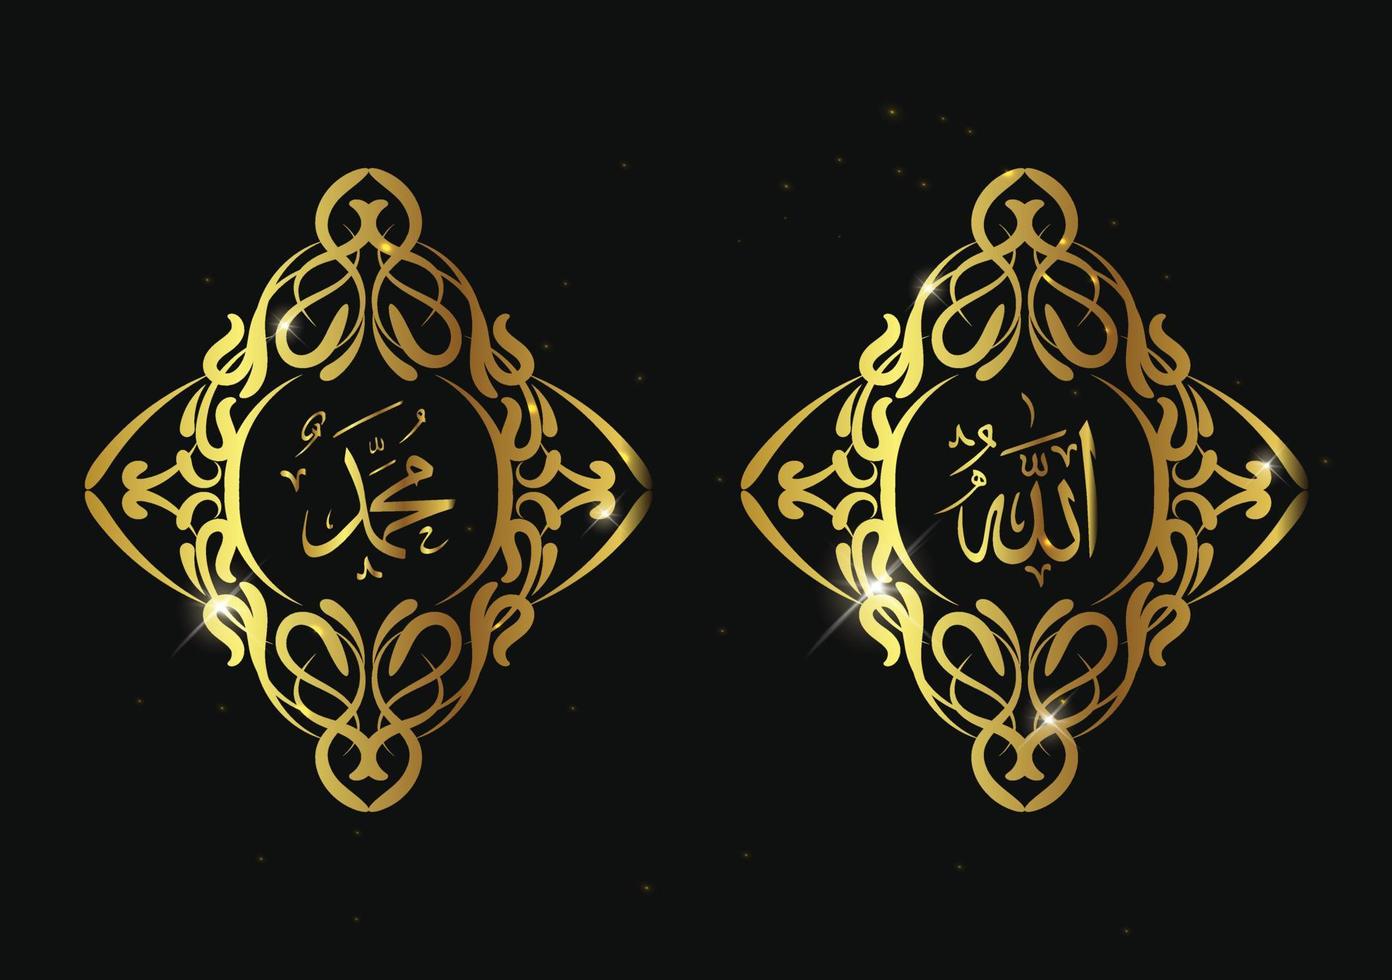 calligrafia araba allah muhammad con cornice retrò e colore oro. calligrafia araba islamica per decorazione, banner, modello, carta, layout. vettore